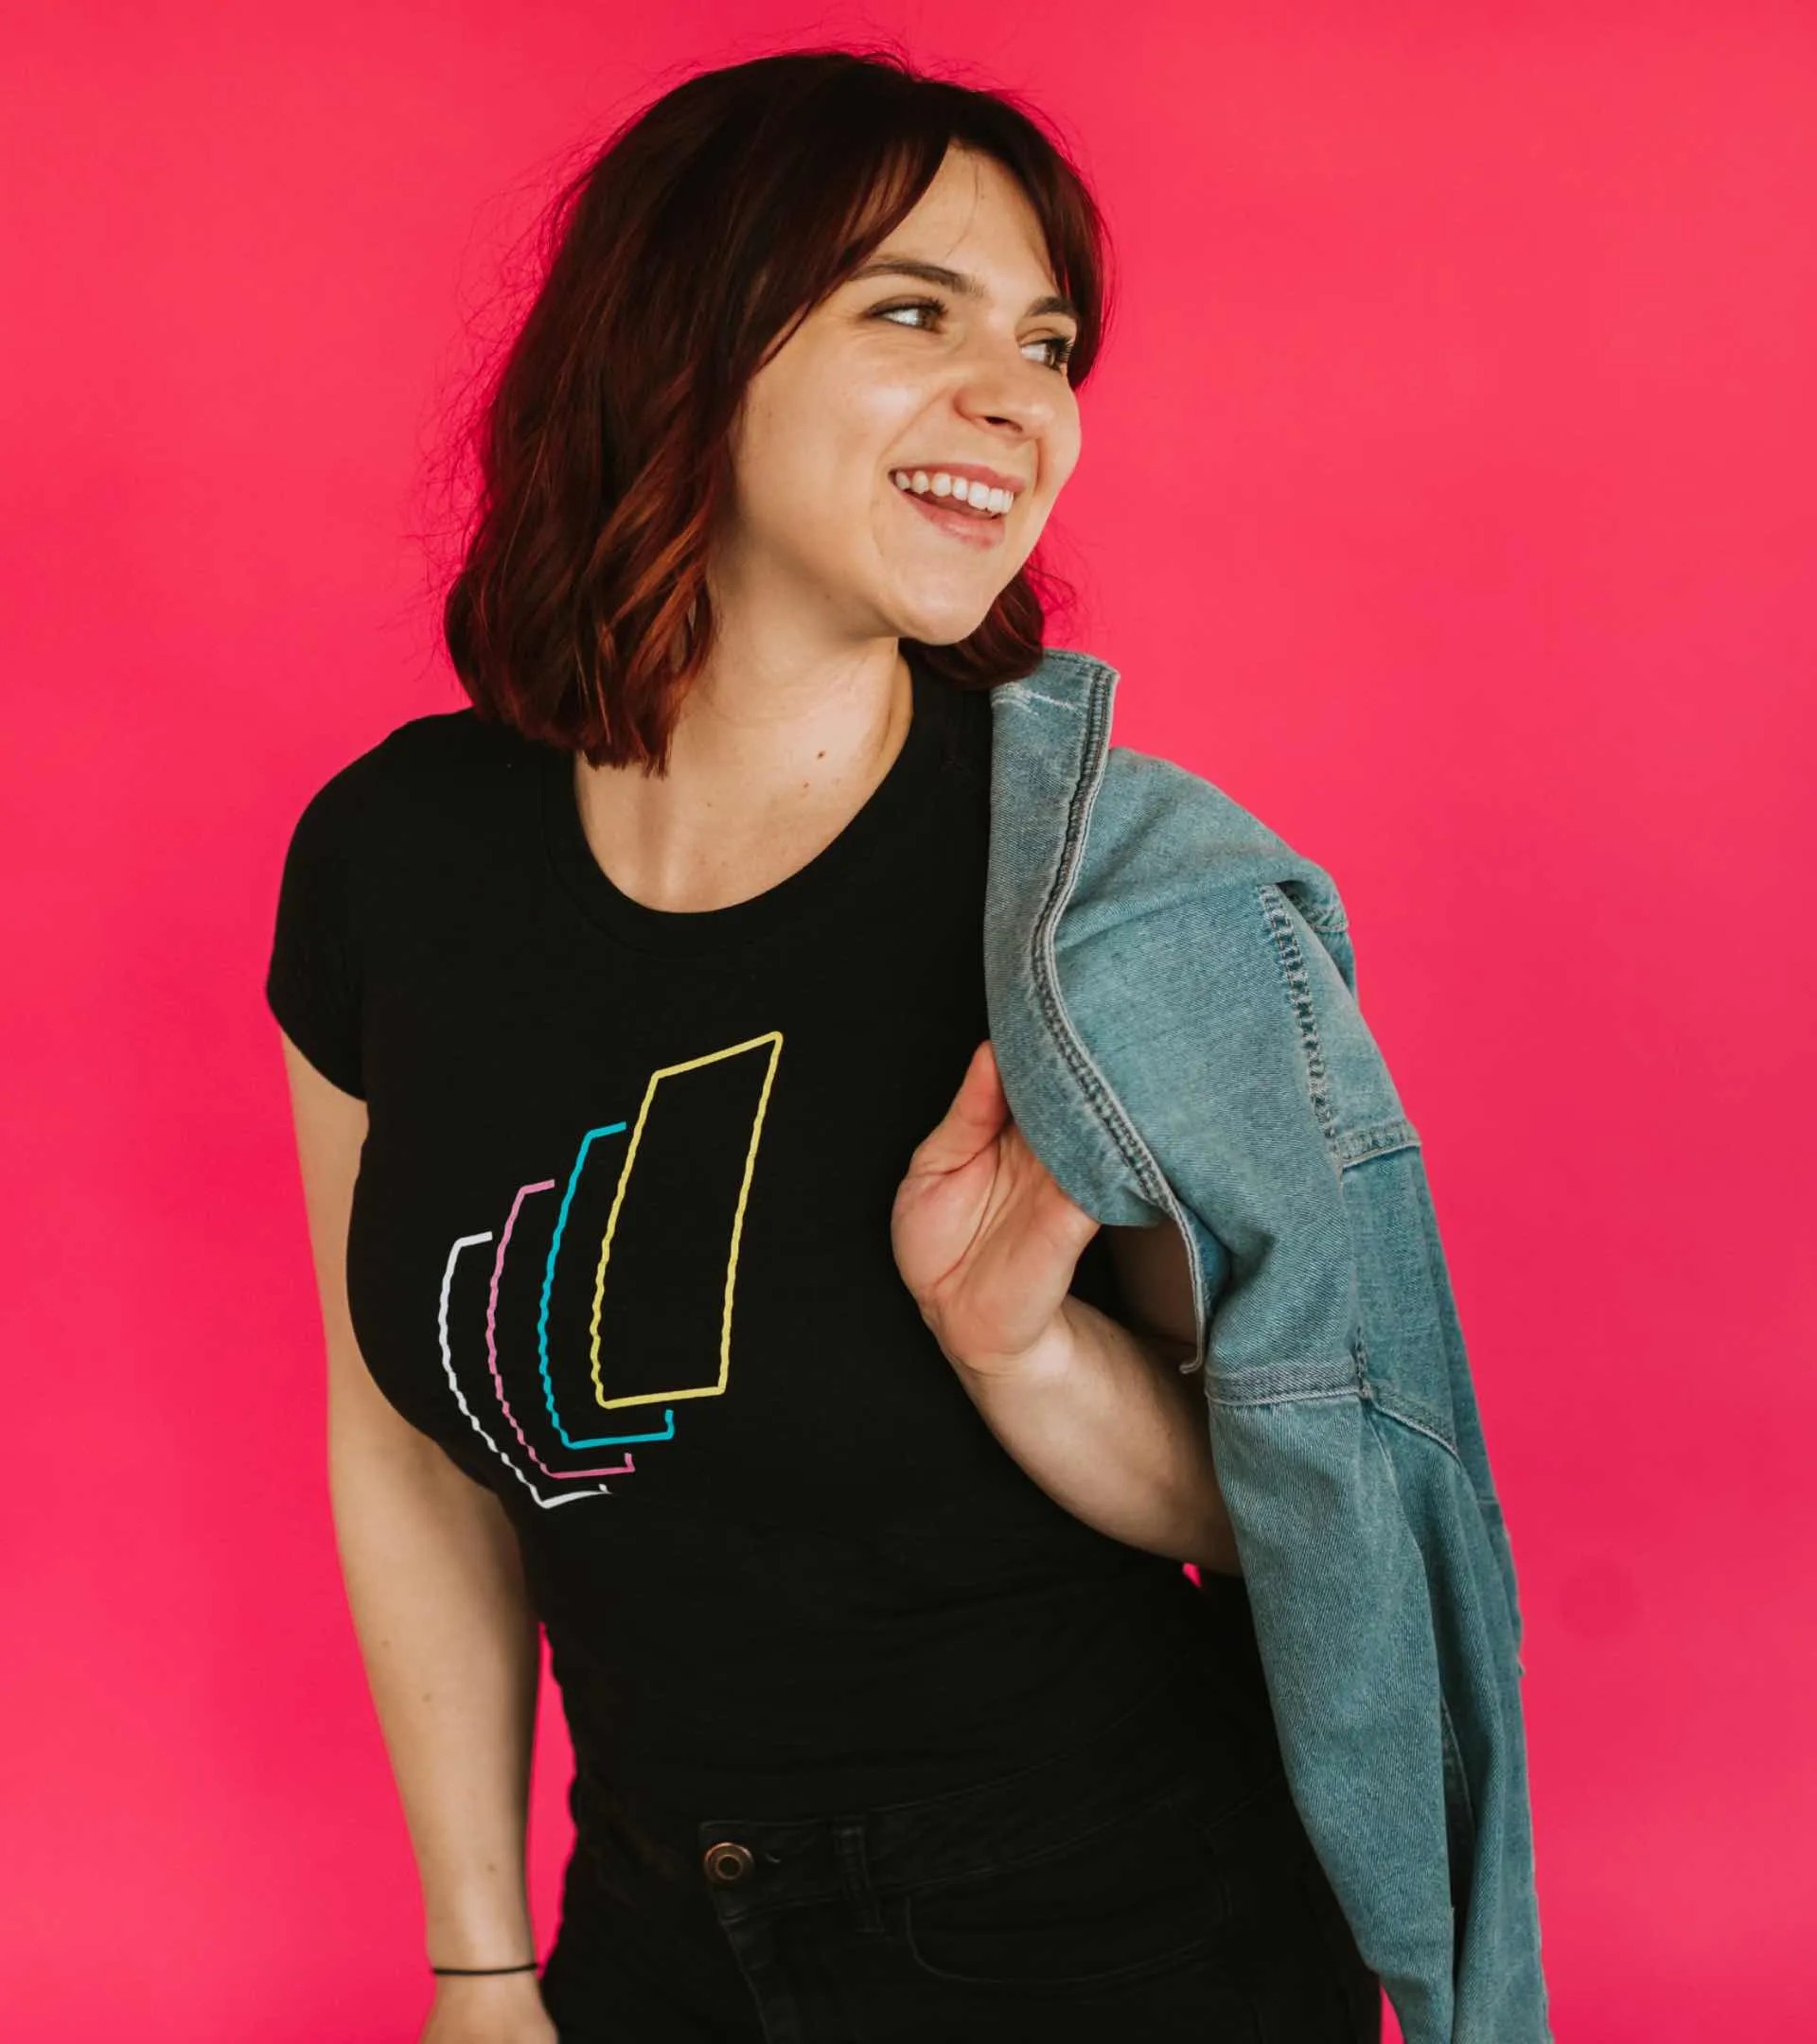 Photo of Carly wearing a Studio 8E8 te-shirt